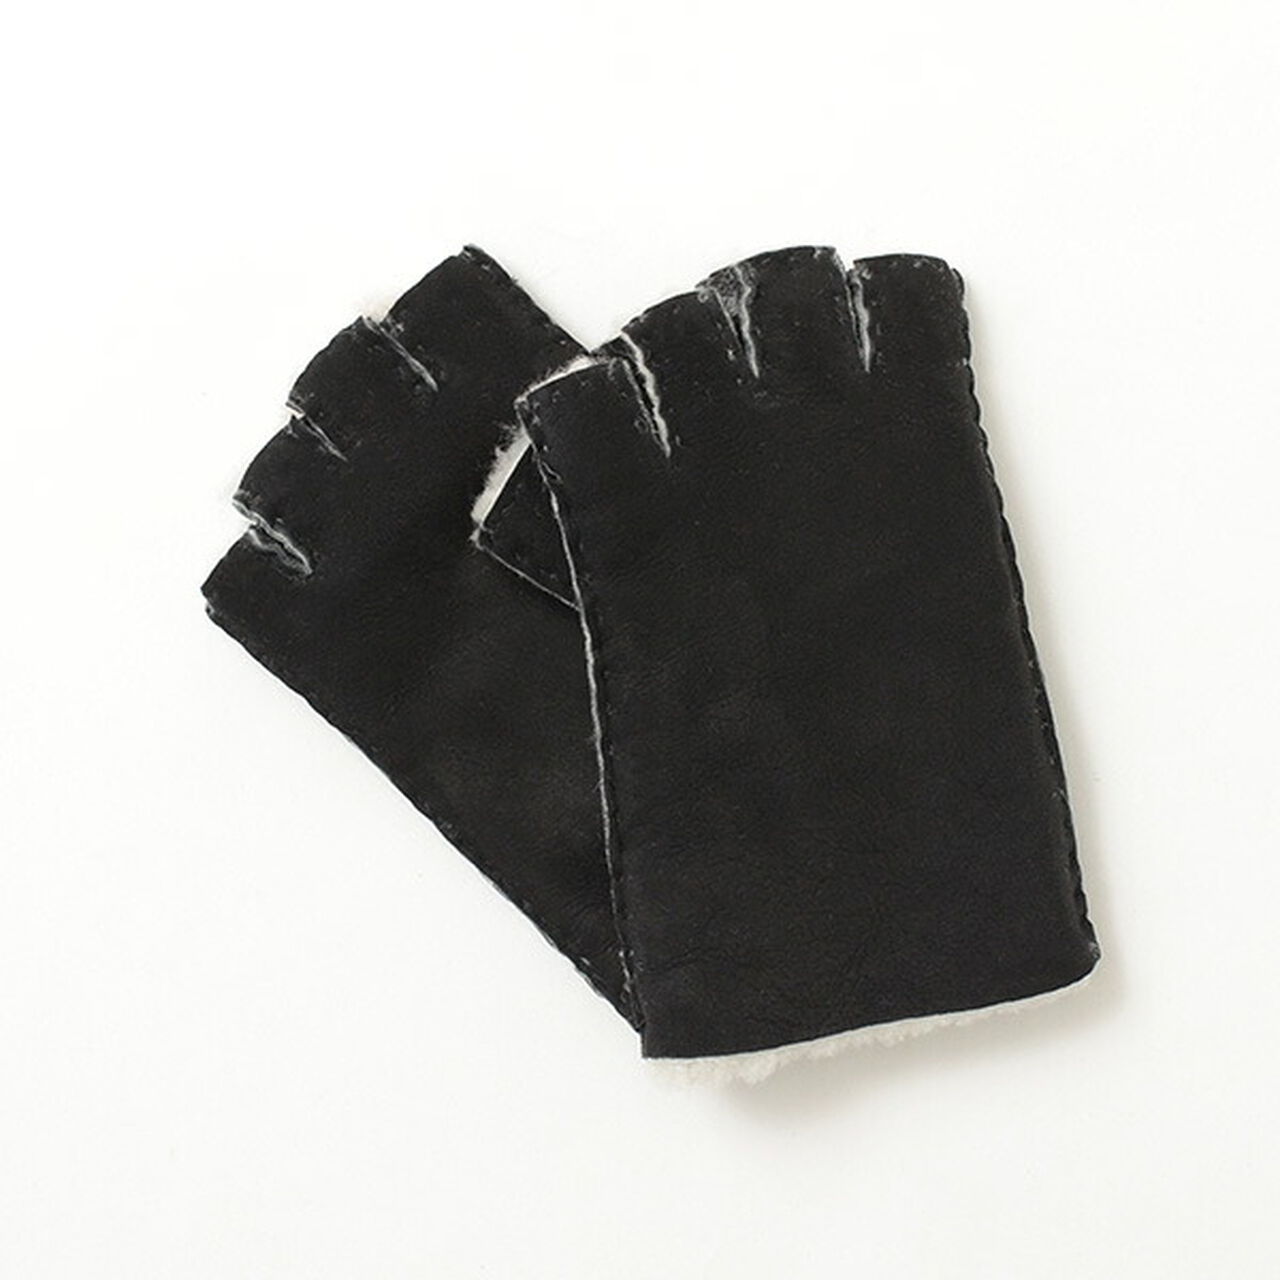 Fingerless Gloves,Black, large image number 0